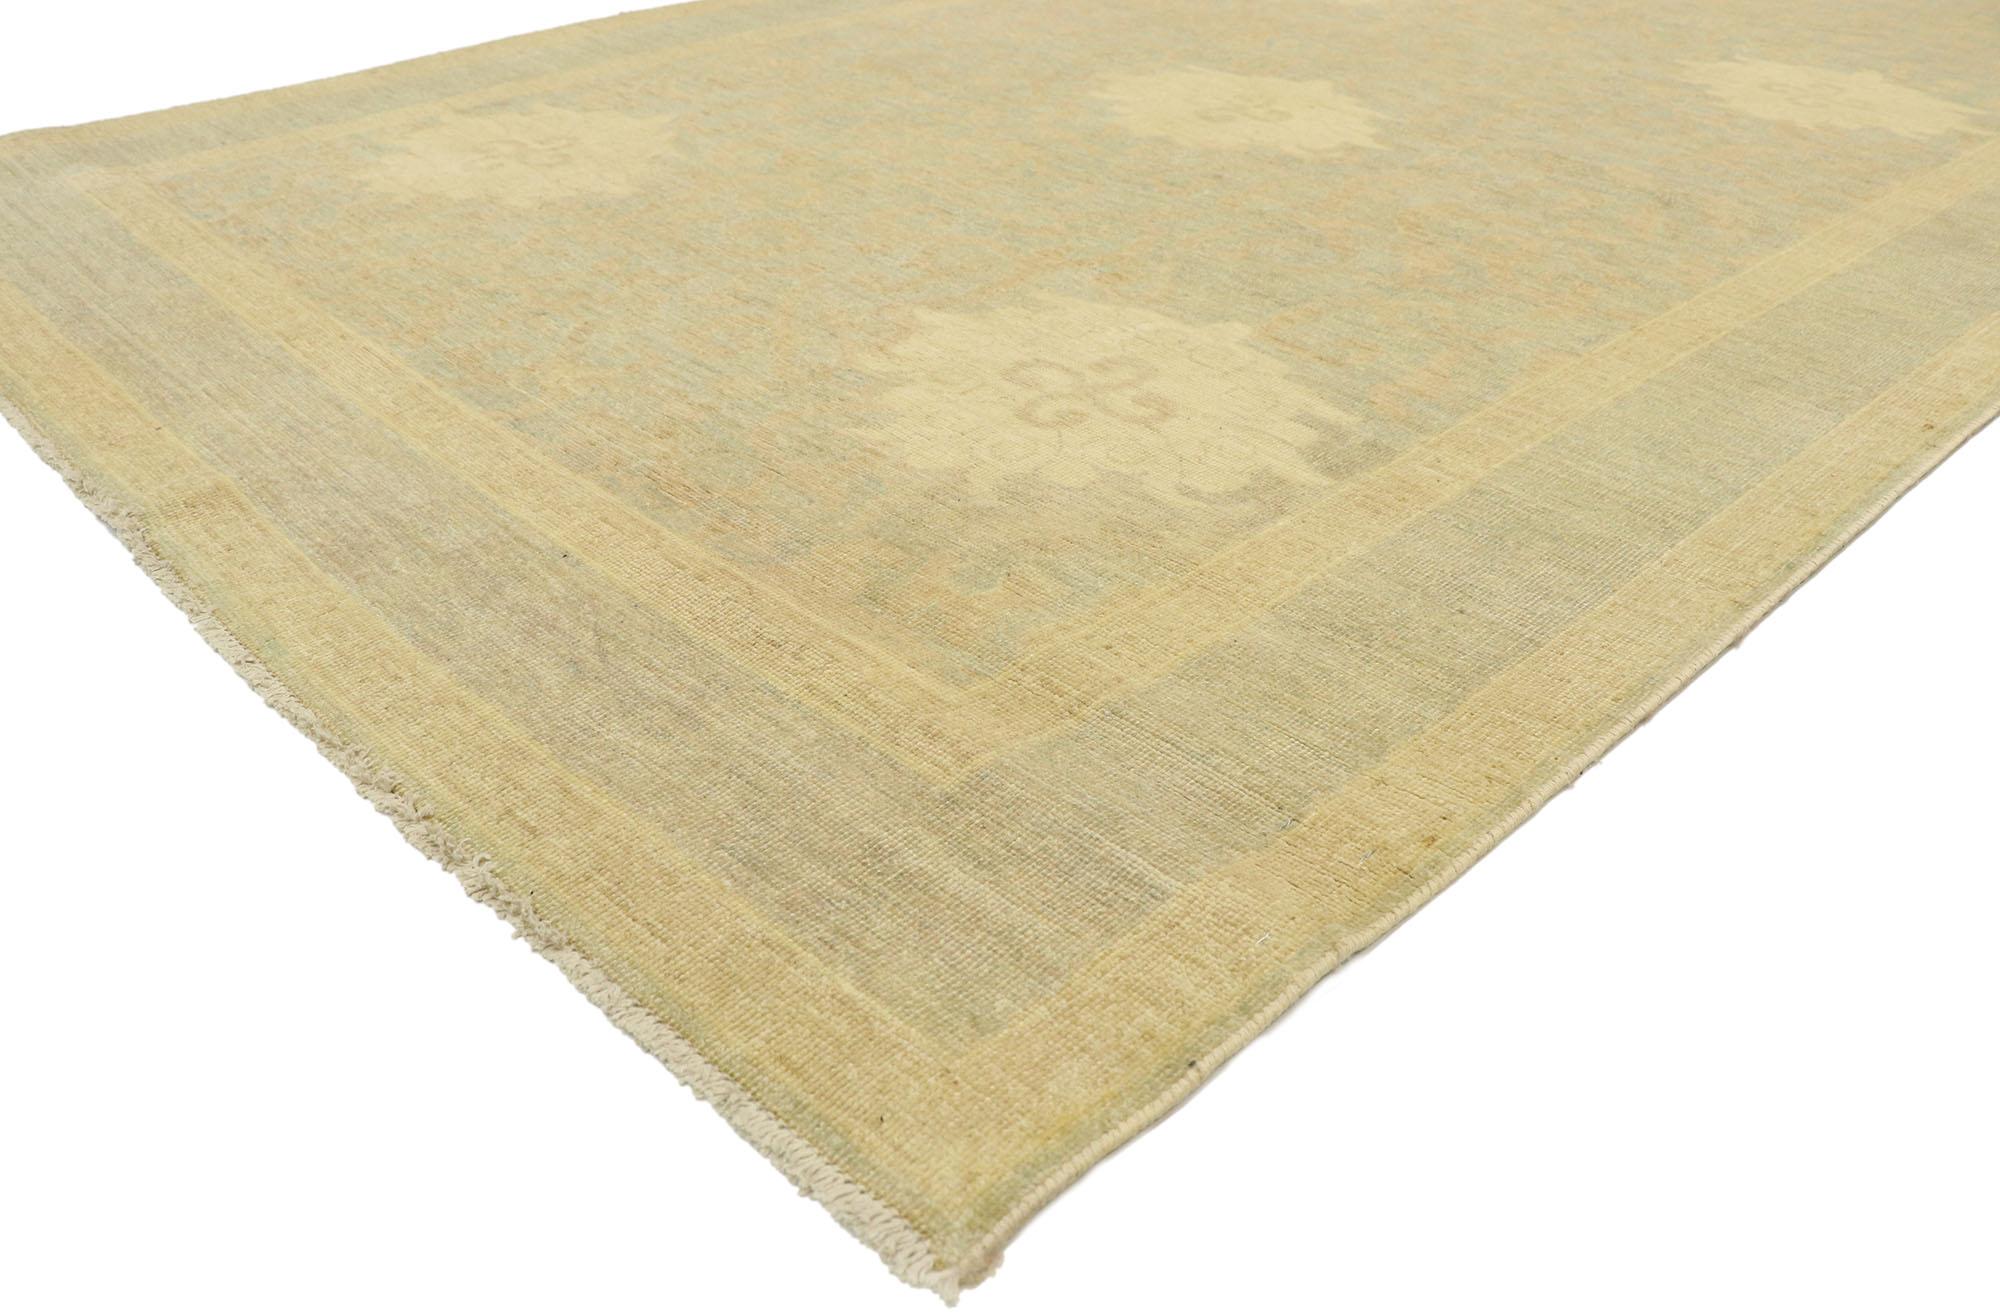 80189, neuer zeitgenössischer Khotan Gallery Teppich im Transitional-Stil. Dieser handgeknüpfte Khotan-Galerieteppich aus Wolle ist weicher, aber nicht weniger auffallend. Er zeigt ein durchgehendes Arabeskenmuster, das mit Ruyi-Wolken verwoben ist,